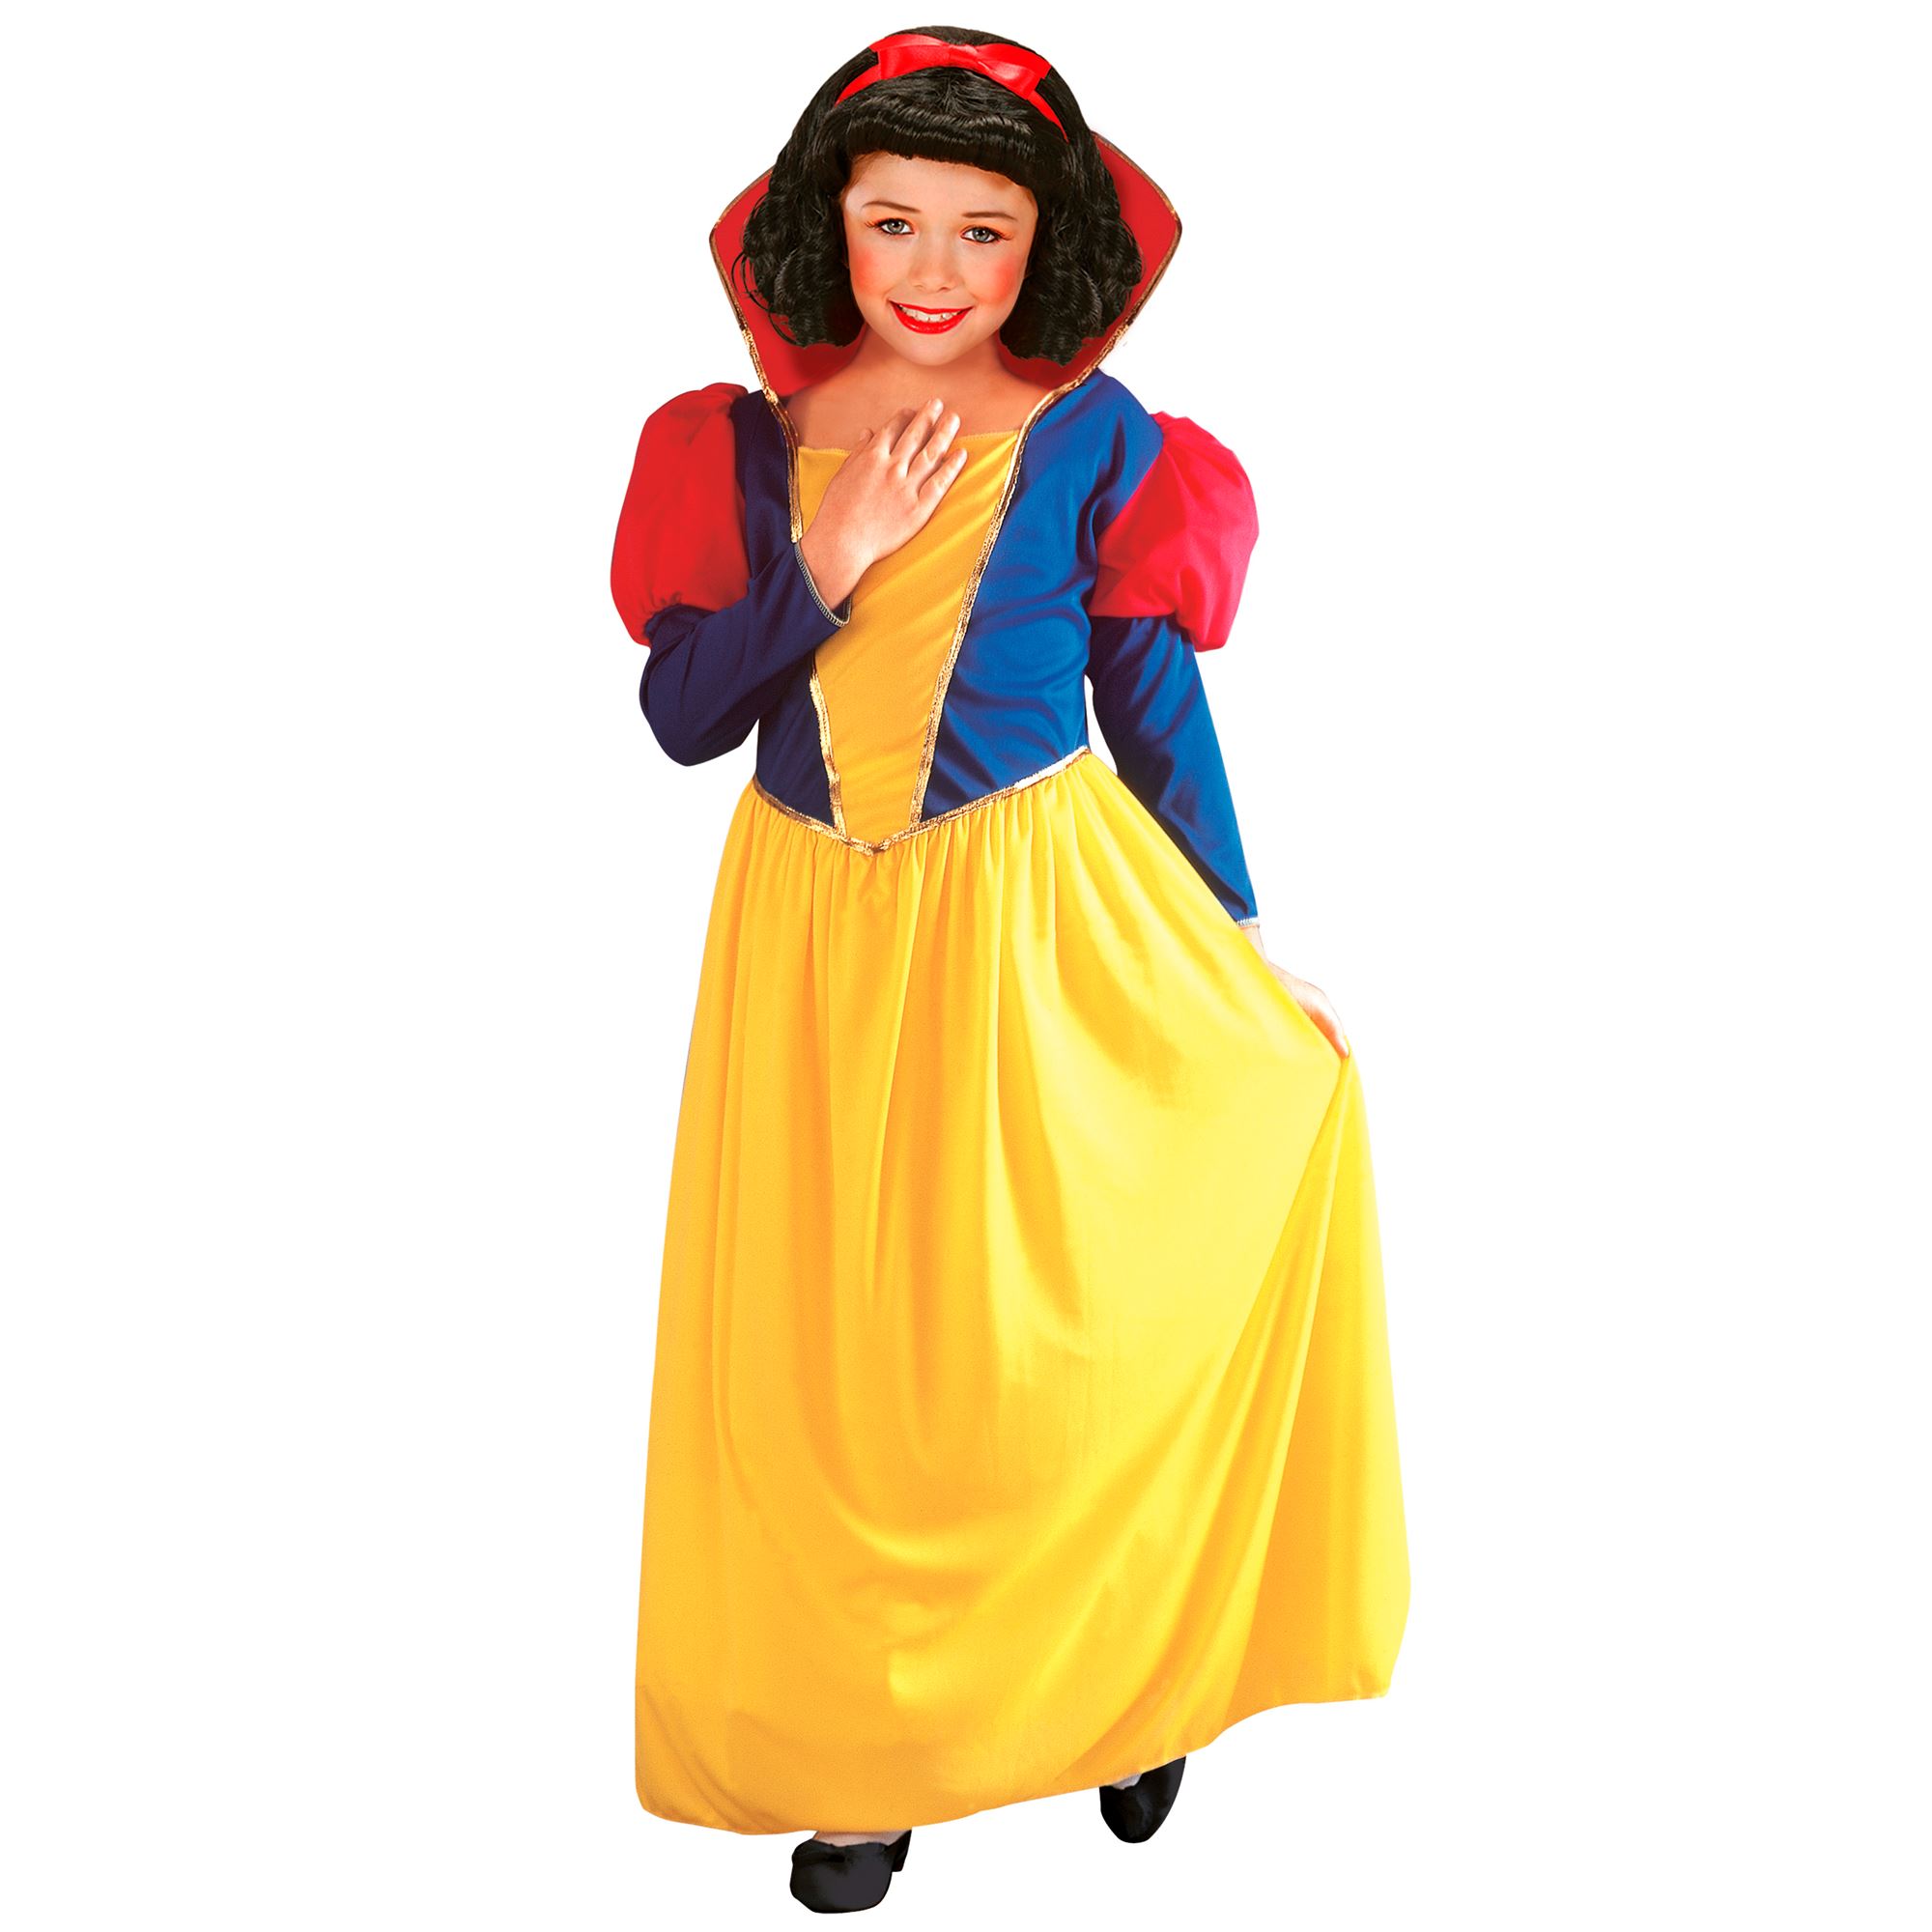 Märchenprinzessin Prinzessin-Kostüm Mädchenkostüm Märchen Fasching Prinzessin Verkleidung